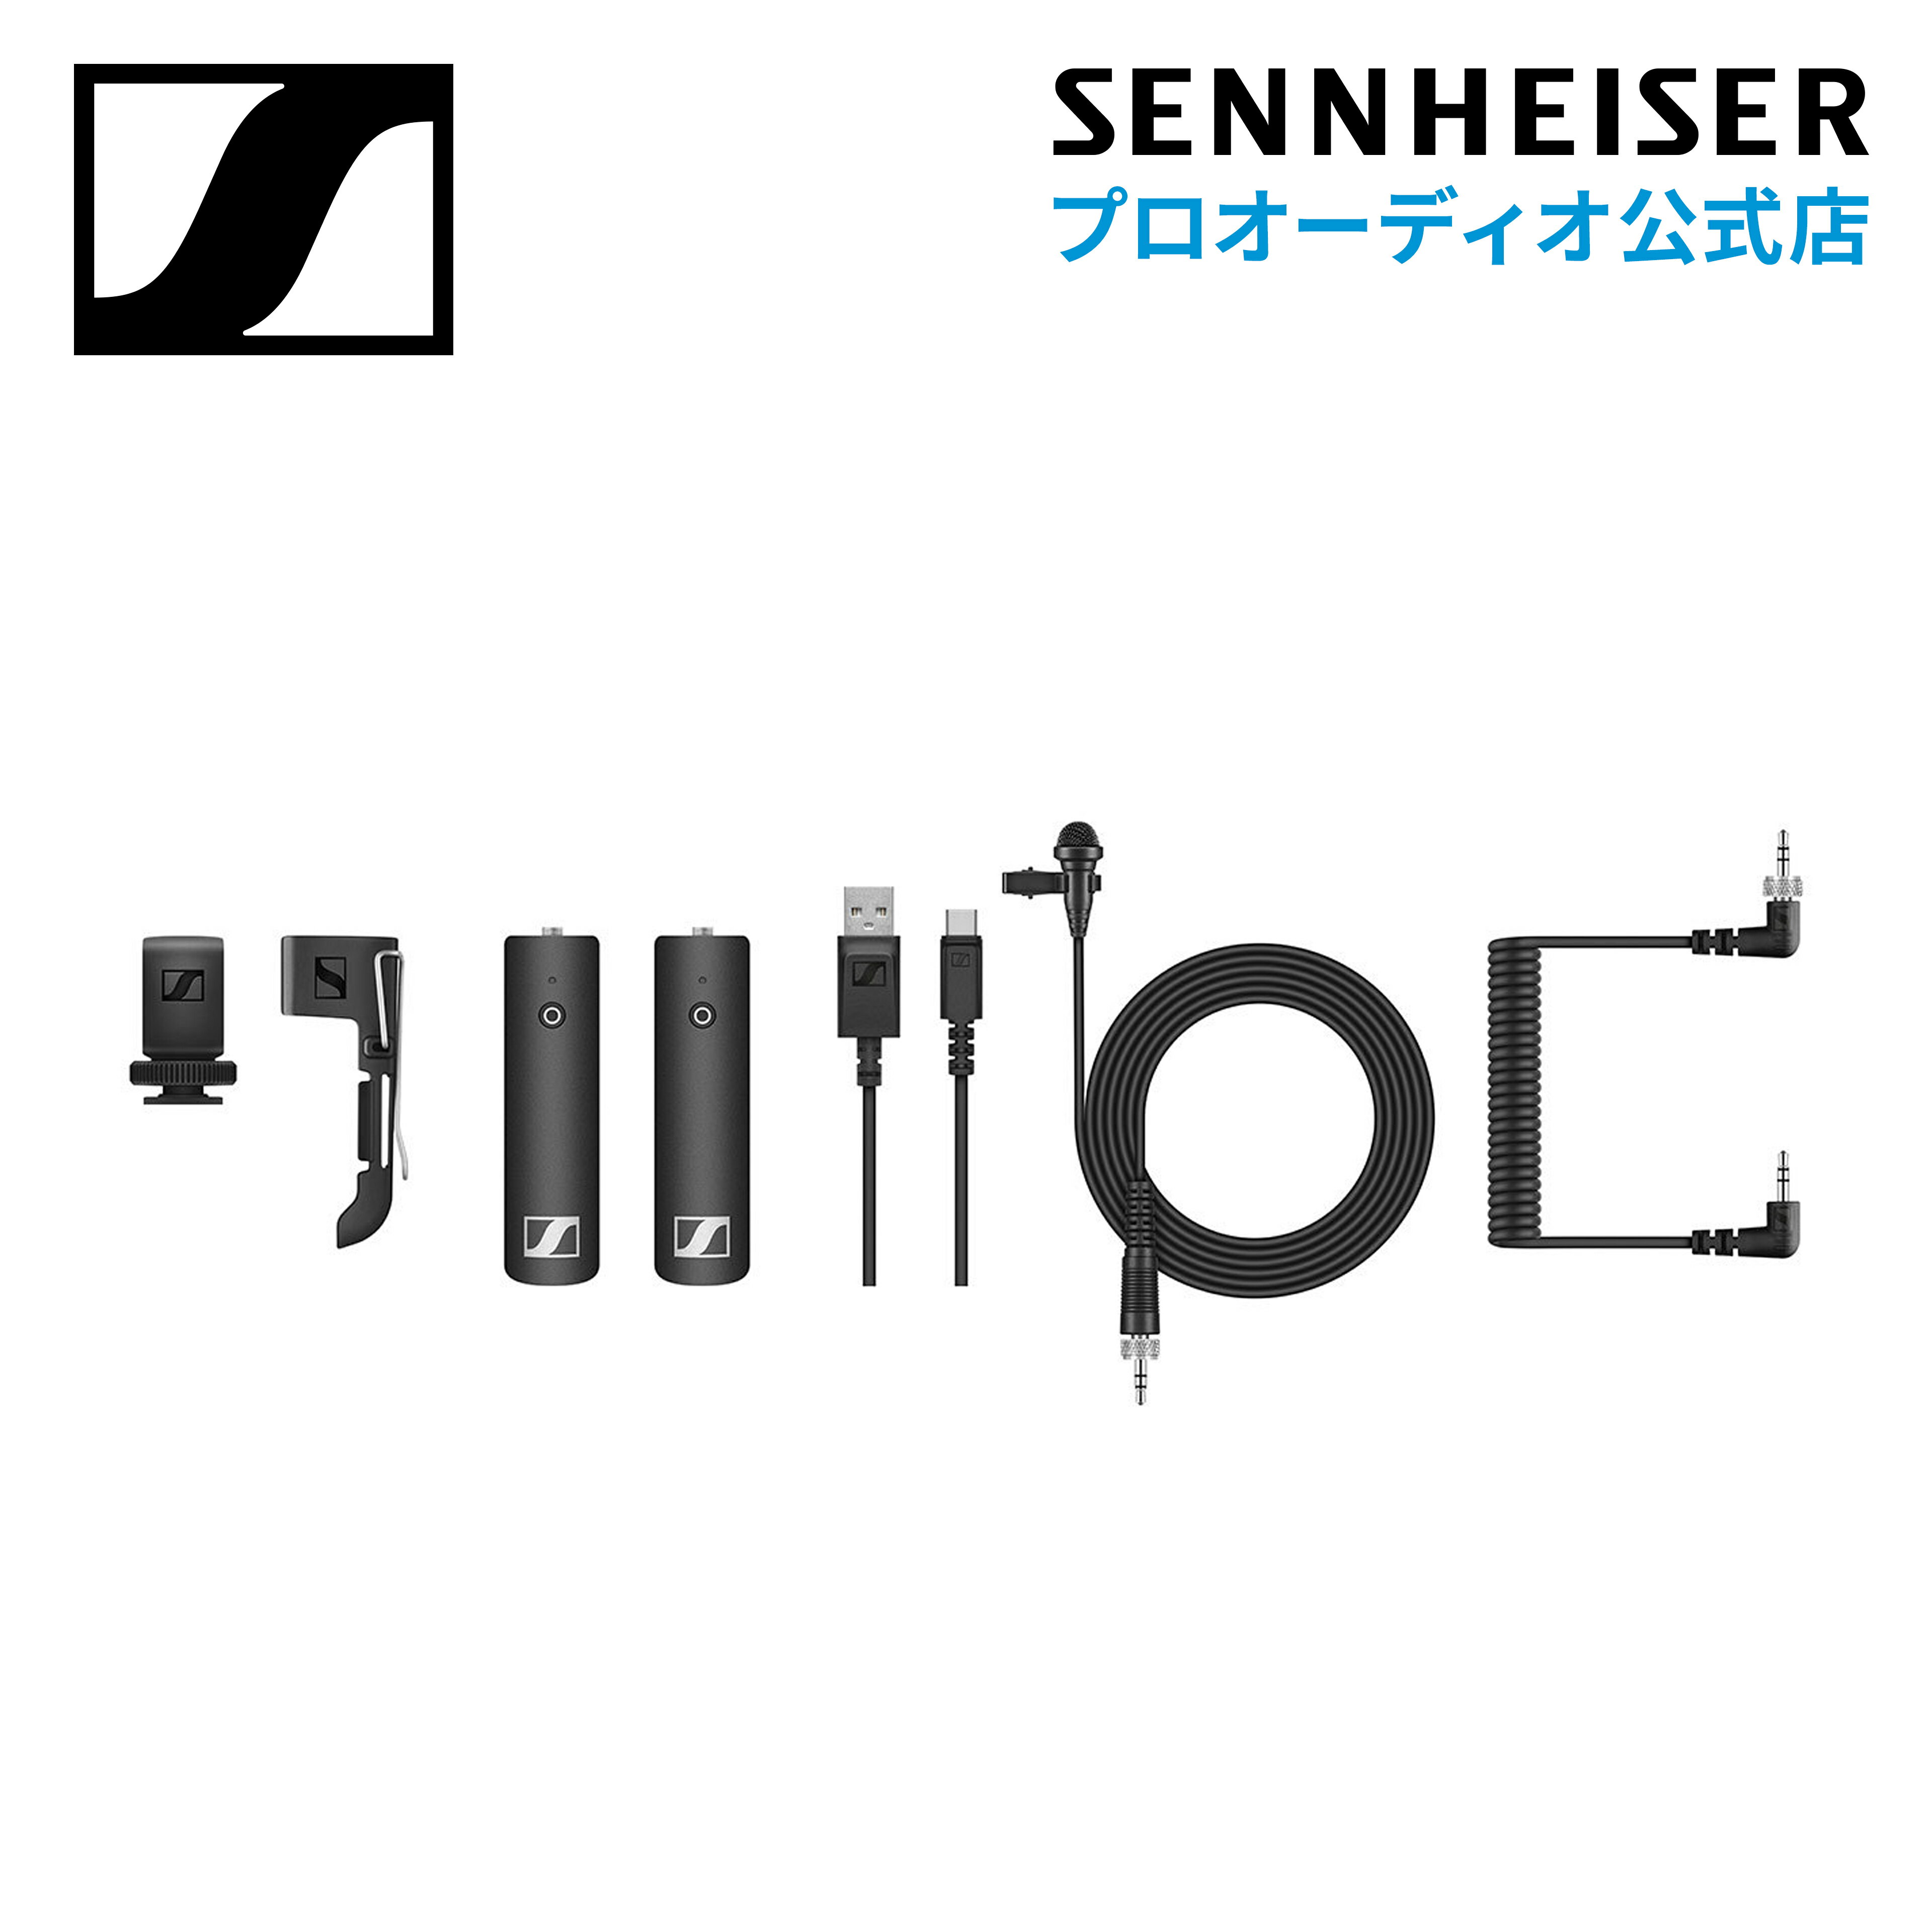 Sennheiser ゼンハイザー XSW-D PORTABLE LAVALIER SET ポータブルラベリアセット  508488 メーカー保証2年 送料無料 ワイヤレスマイクロホンシステム Youtube クリエーター